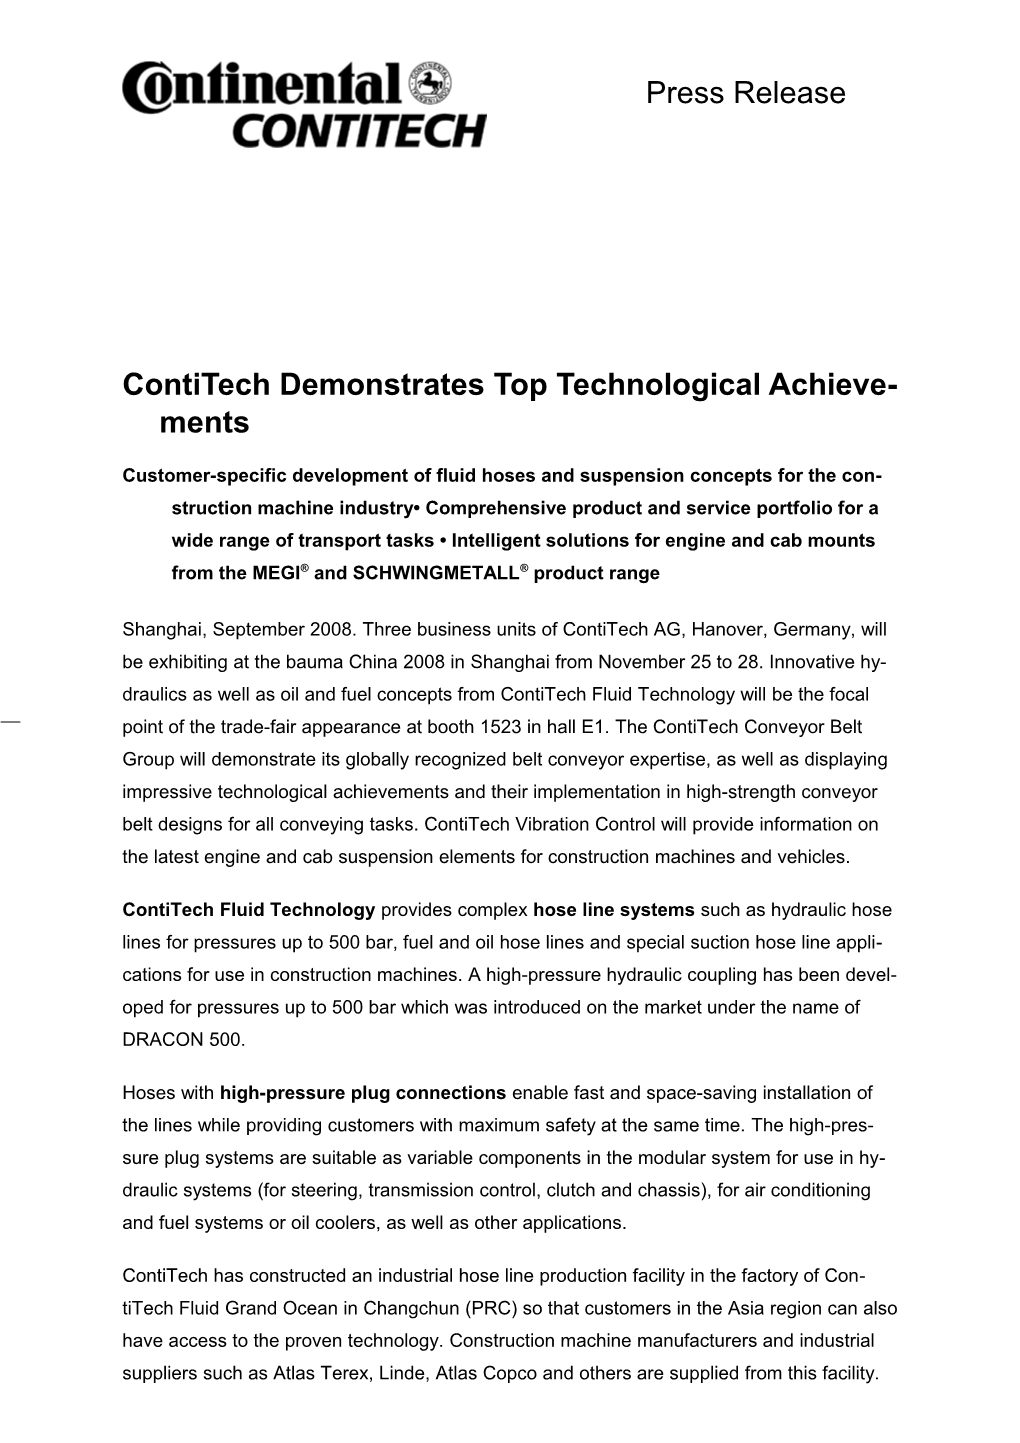 Contitech Demonstrates Top Technological Achievements